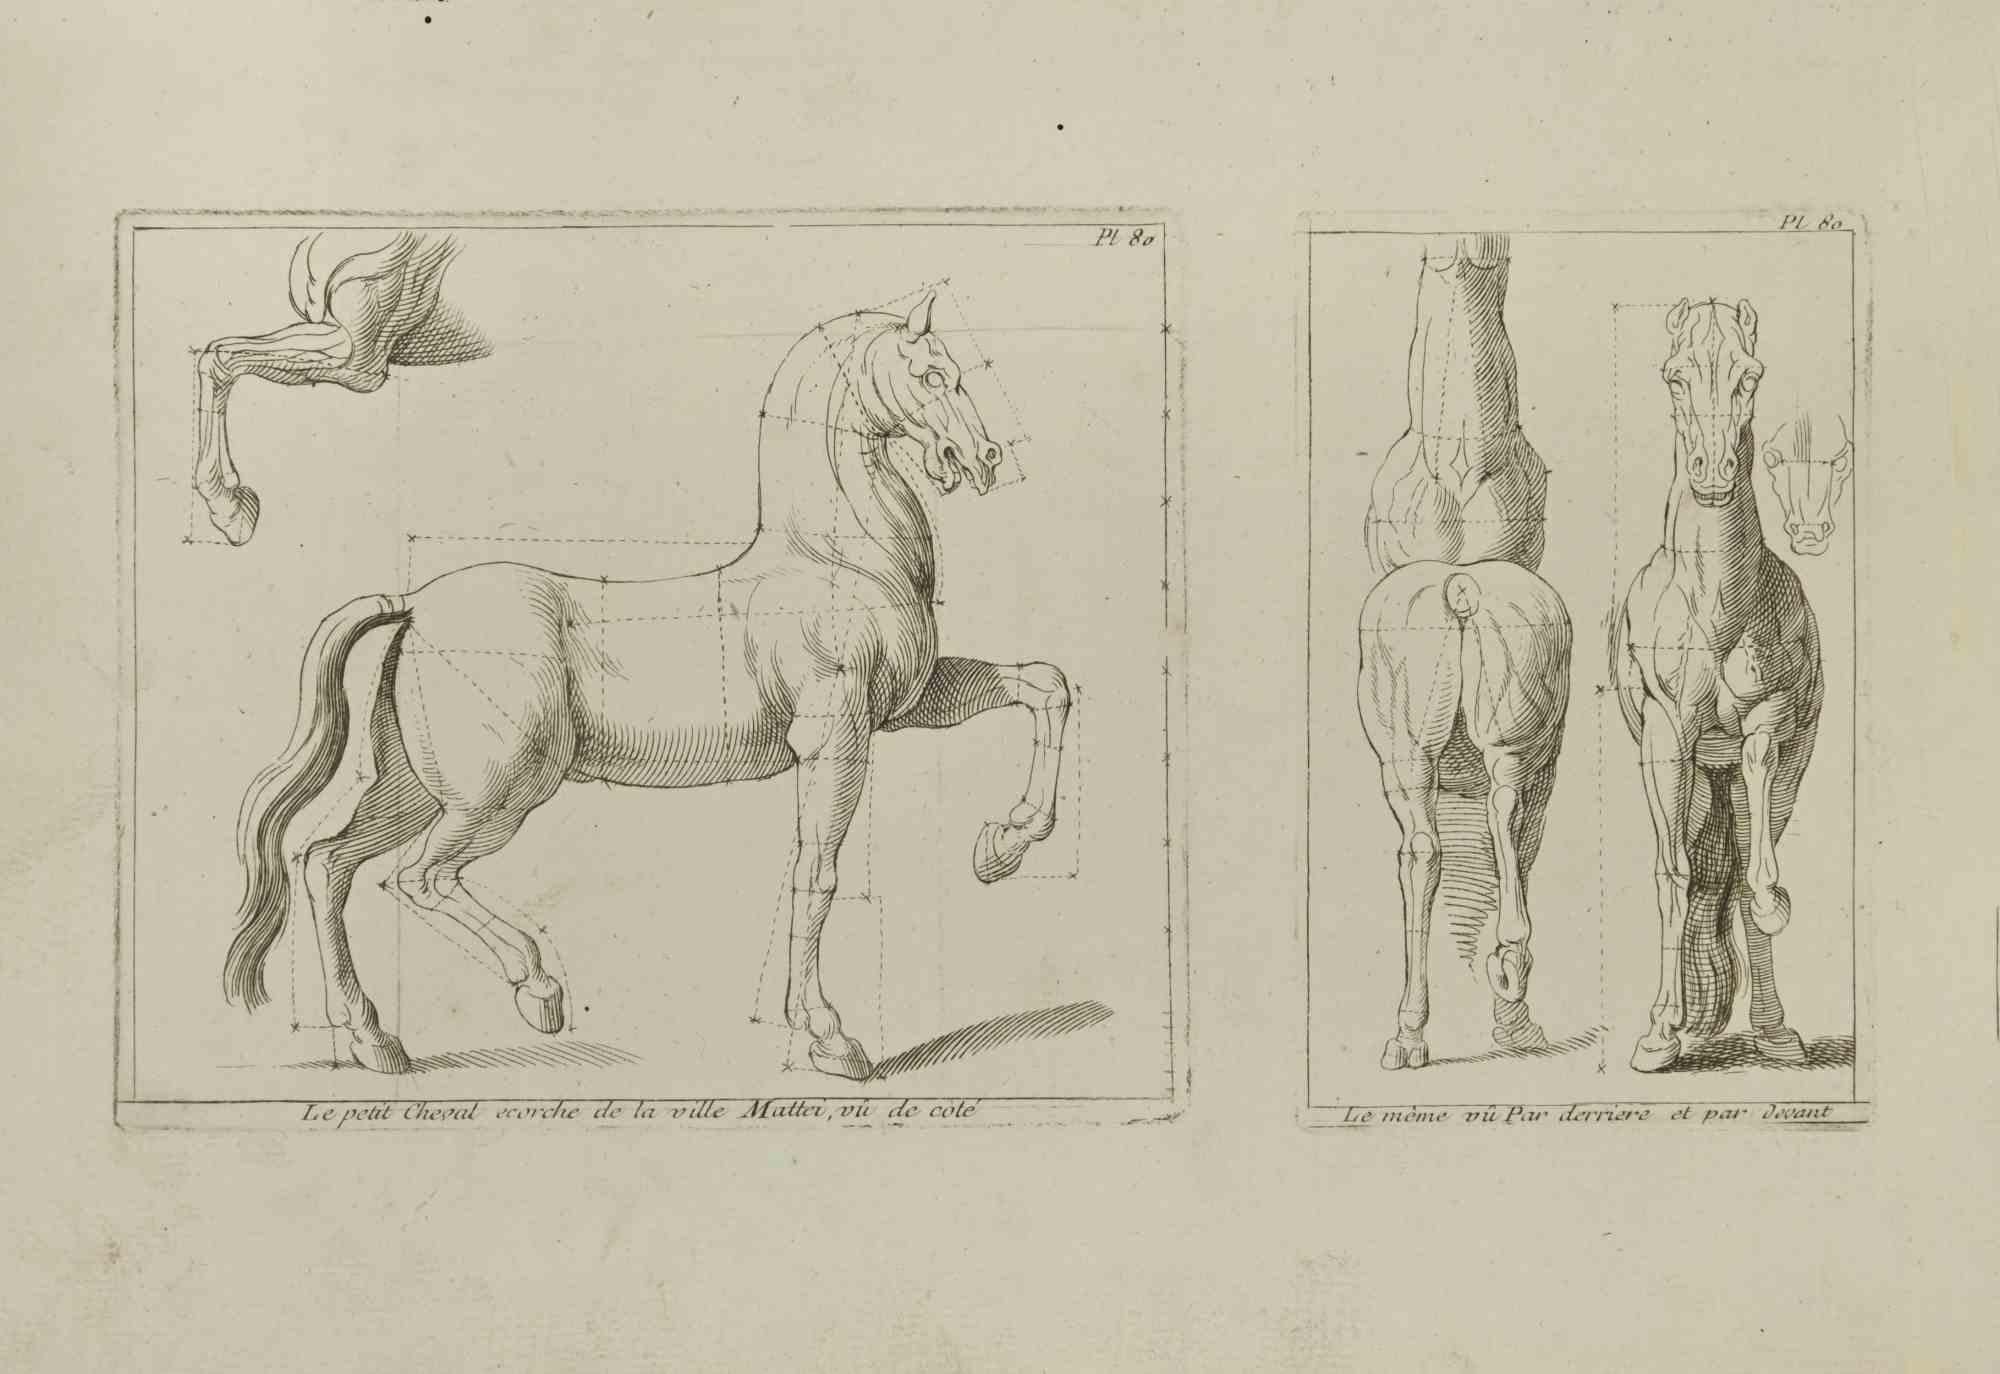 Studie eines Pferdes - Tafel 80 ist eine Radierung von Jean François Poletnich aus dem 18. Jahrhundert.

Gute Bedingungen.

Das Kunstwerk wird mit sicheren Strichen dargestellt.